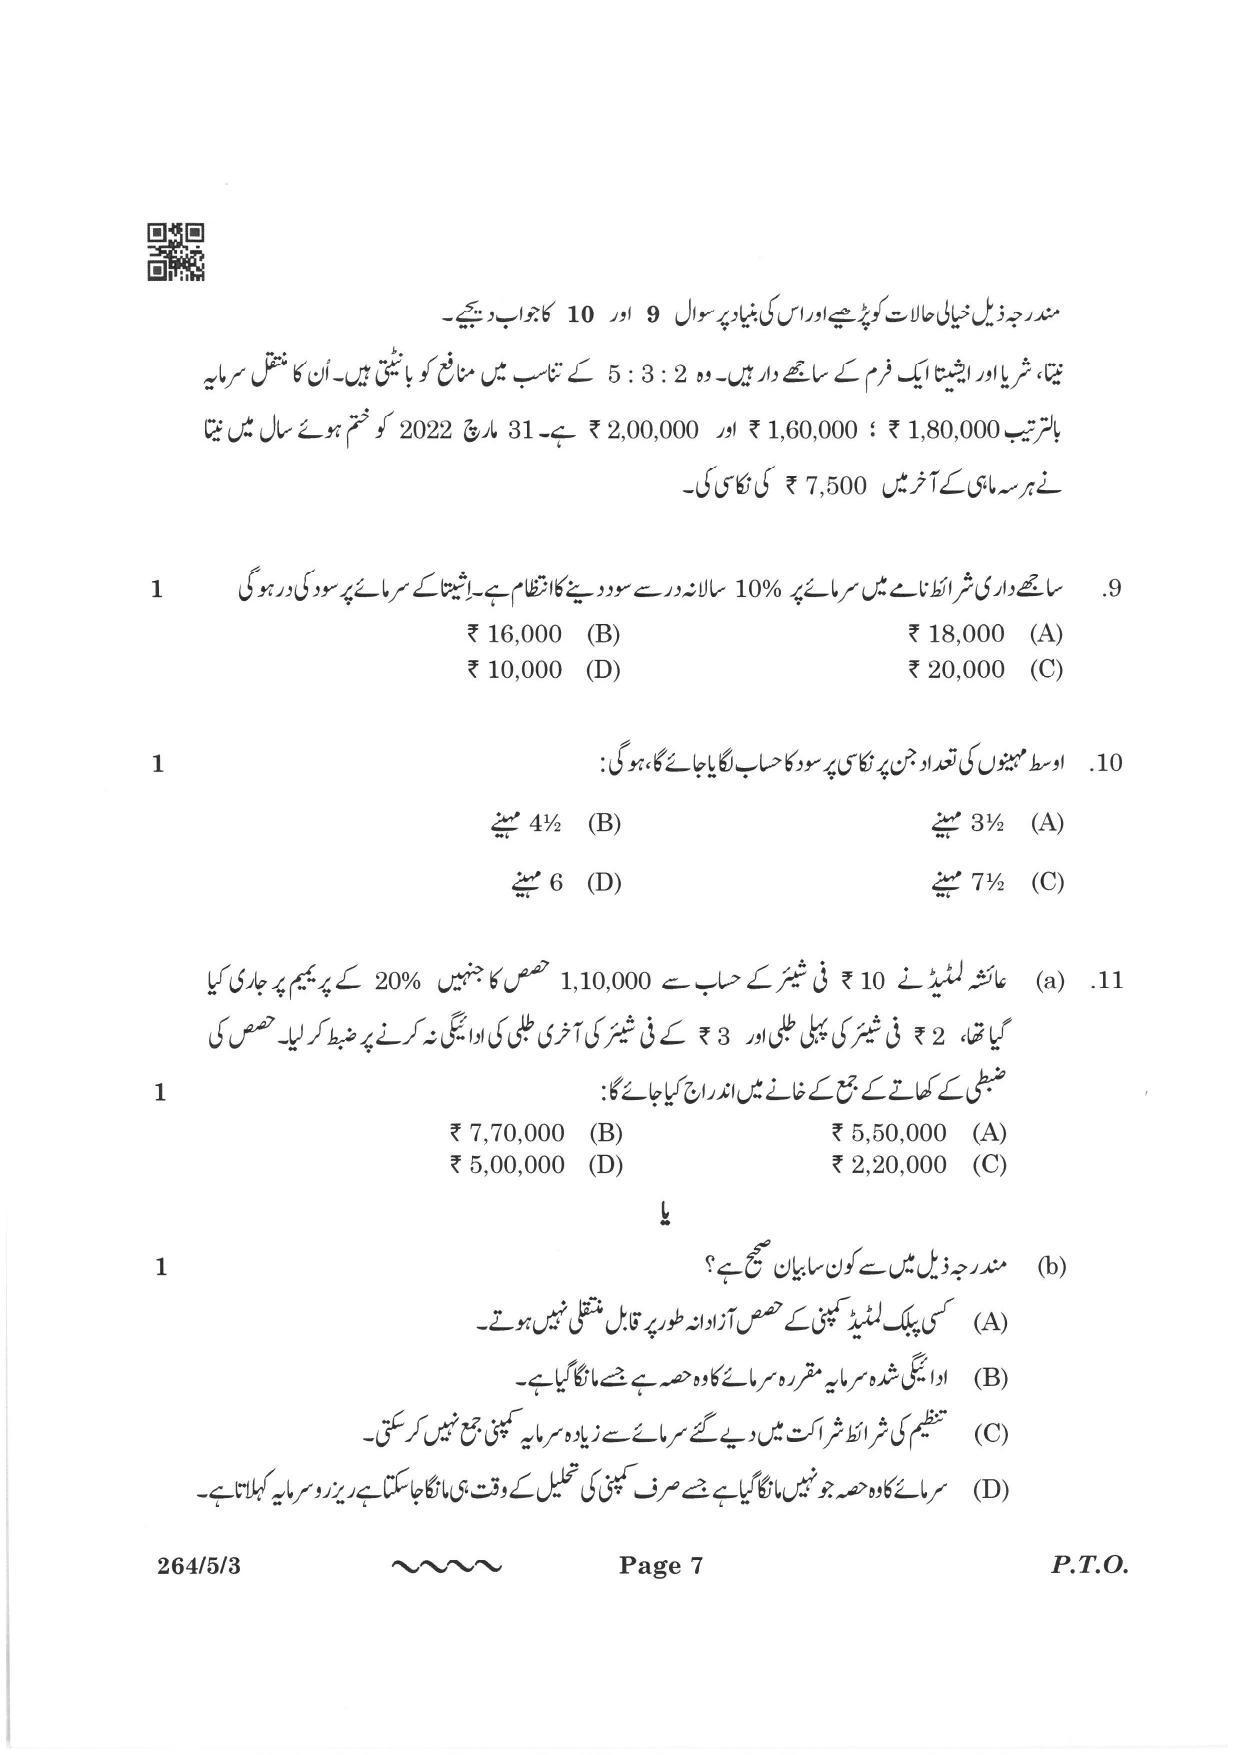 CBSE Class 12 264-5-3 Accountancy Urdu Version 2023 Question Paper - Page 7